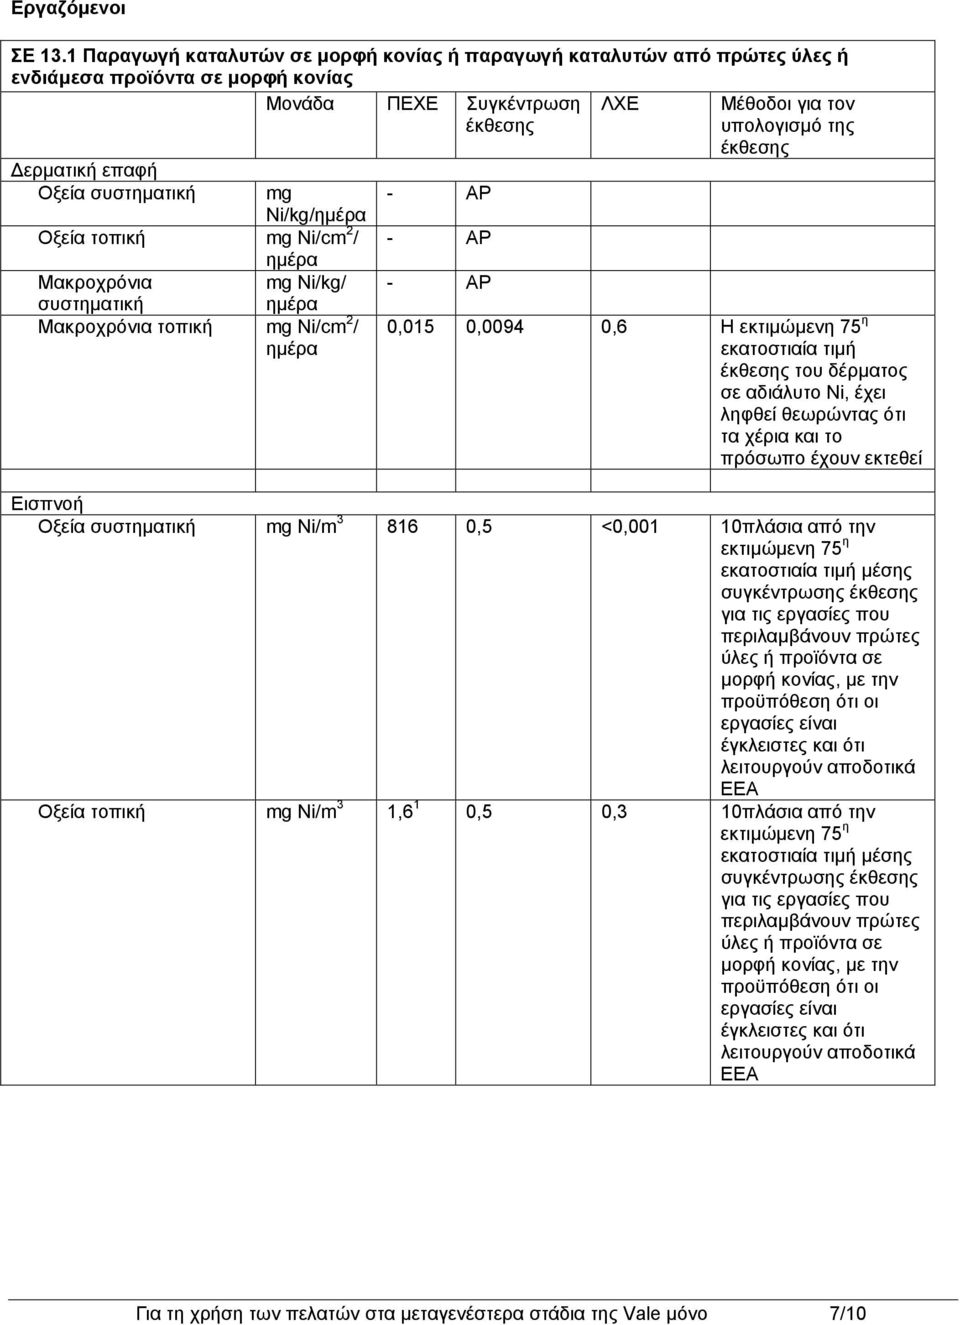 τοπική mg Ni/cm 2 / Μακροχρόνια mg Ni/kg/ συστηματική Μακροχρόνια τοπική mg Ni/cm 2 / Μέθοδοι για τον υπολογισμό της έκθεσης 0,015 0,0094 0,6 Η εκτιμώμενη 75 η εκατοστιαία τιμή έκθεσης του δέρματος